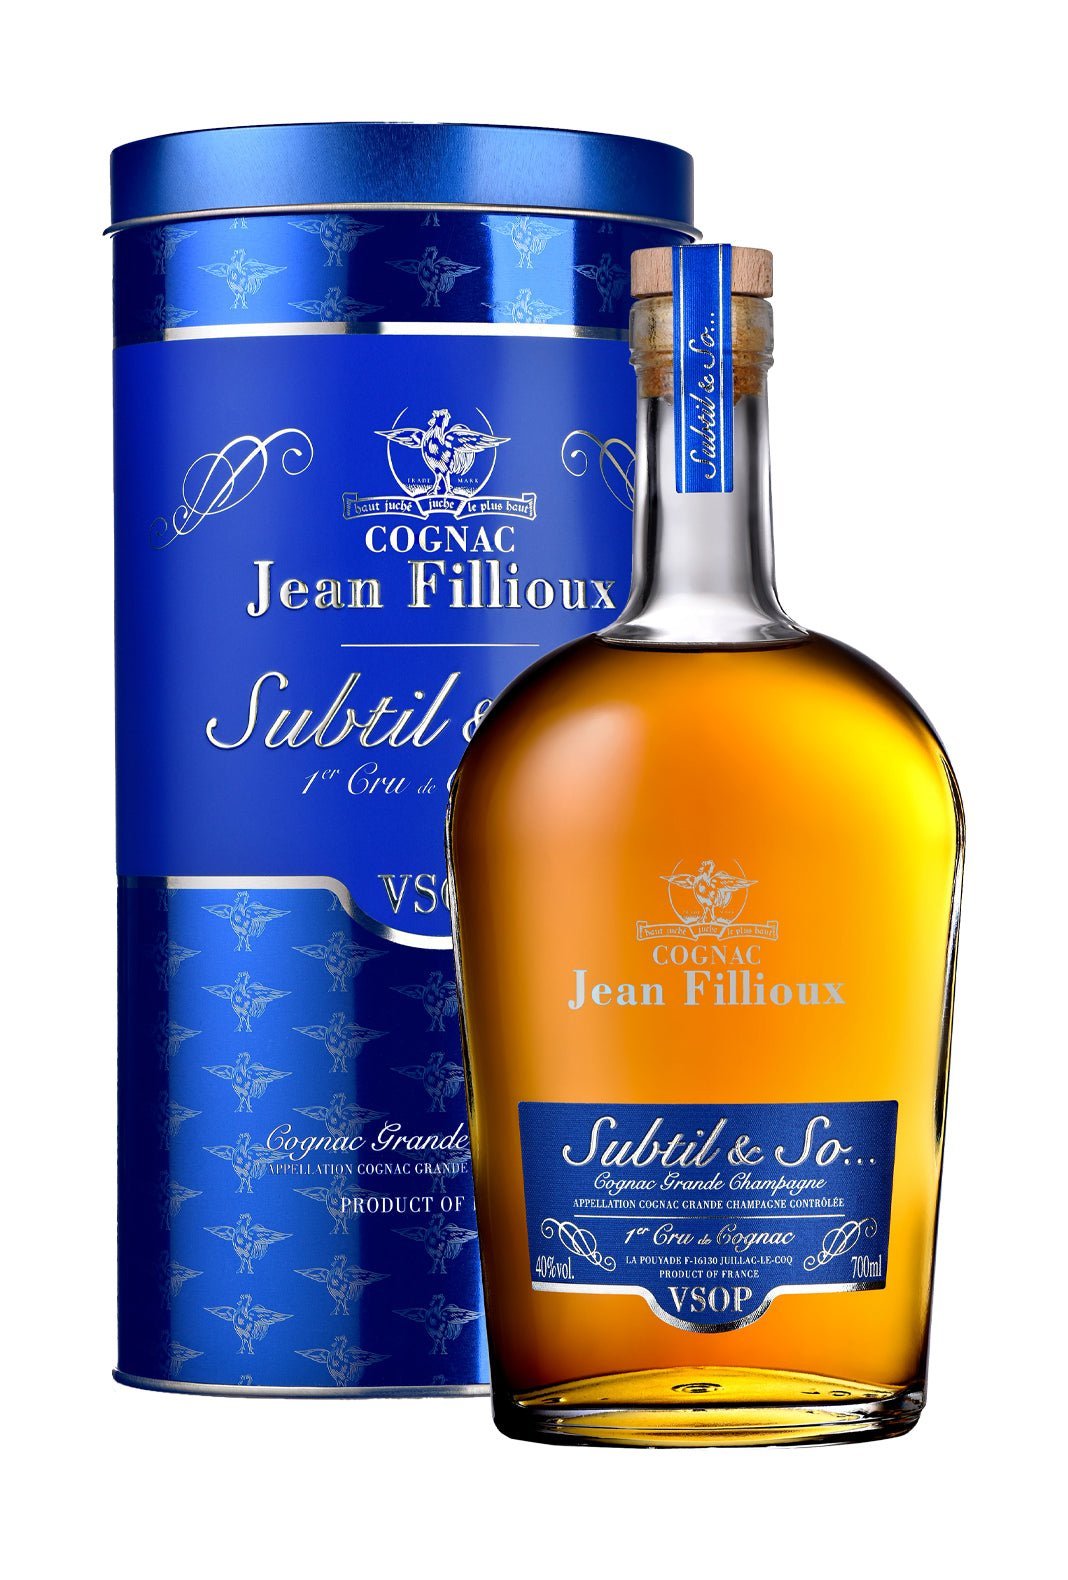 Jean Fillioux Subtil & So Cognac VSOP Grand Champagne 40% 700ml | Brandy | Shop online at Spirits of France